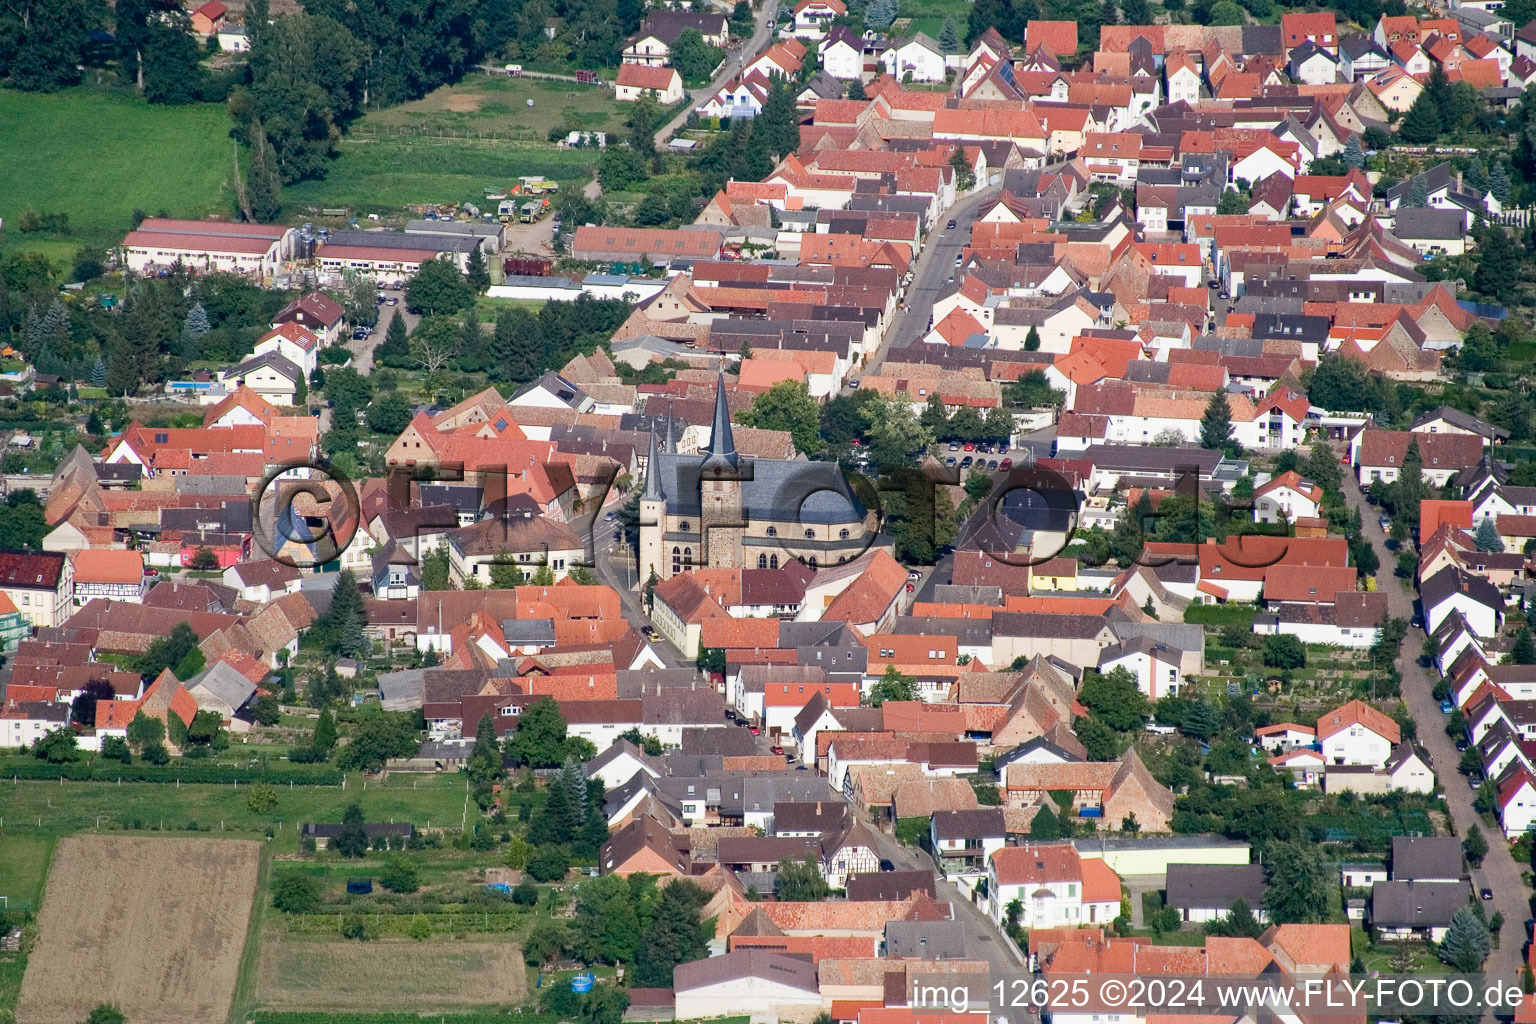 Village view in the district Geinsheim in Neustadt an der Weinstrasse in the state Rhineland-Palatinate